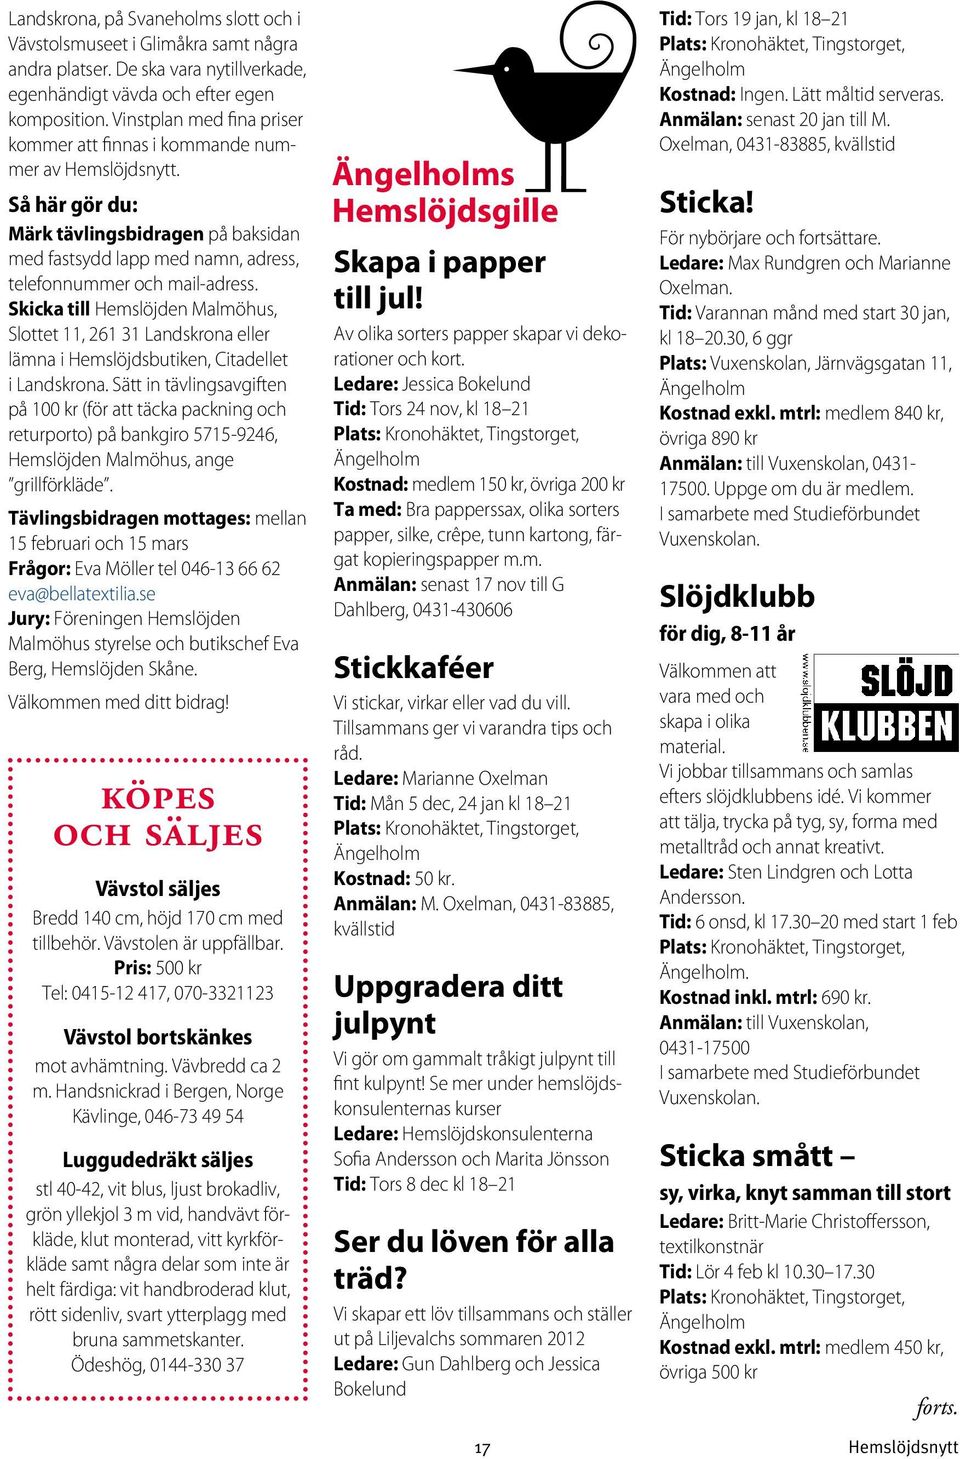 Skicka till Hemslöjden Malmöhus, Slottet 11, 261 31 Landskrona eller lämna i Hemslöjdsbutiken, Citadellet i Landskrona.